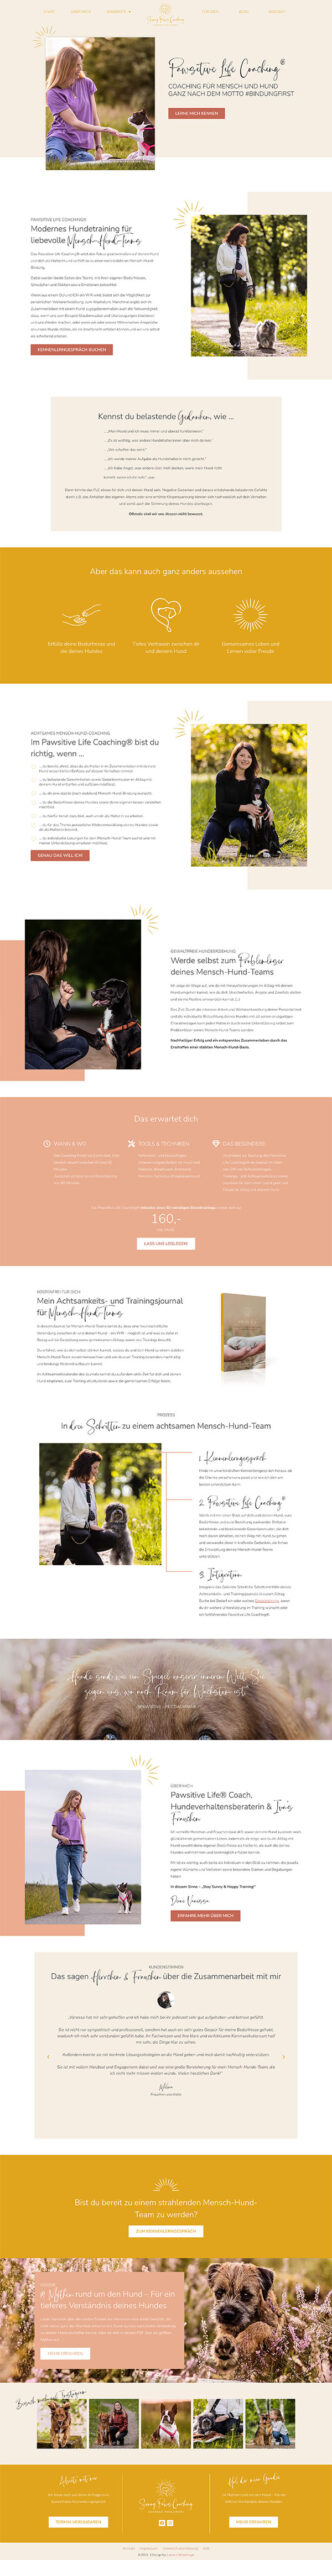 Screenshot der Seite Pawsitive Life Coaching auf Website für Hundecoach zeigt minimalistisches Branding und klares Design